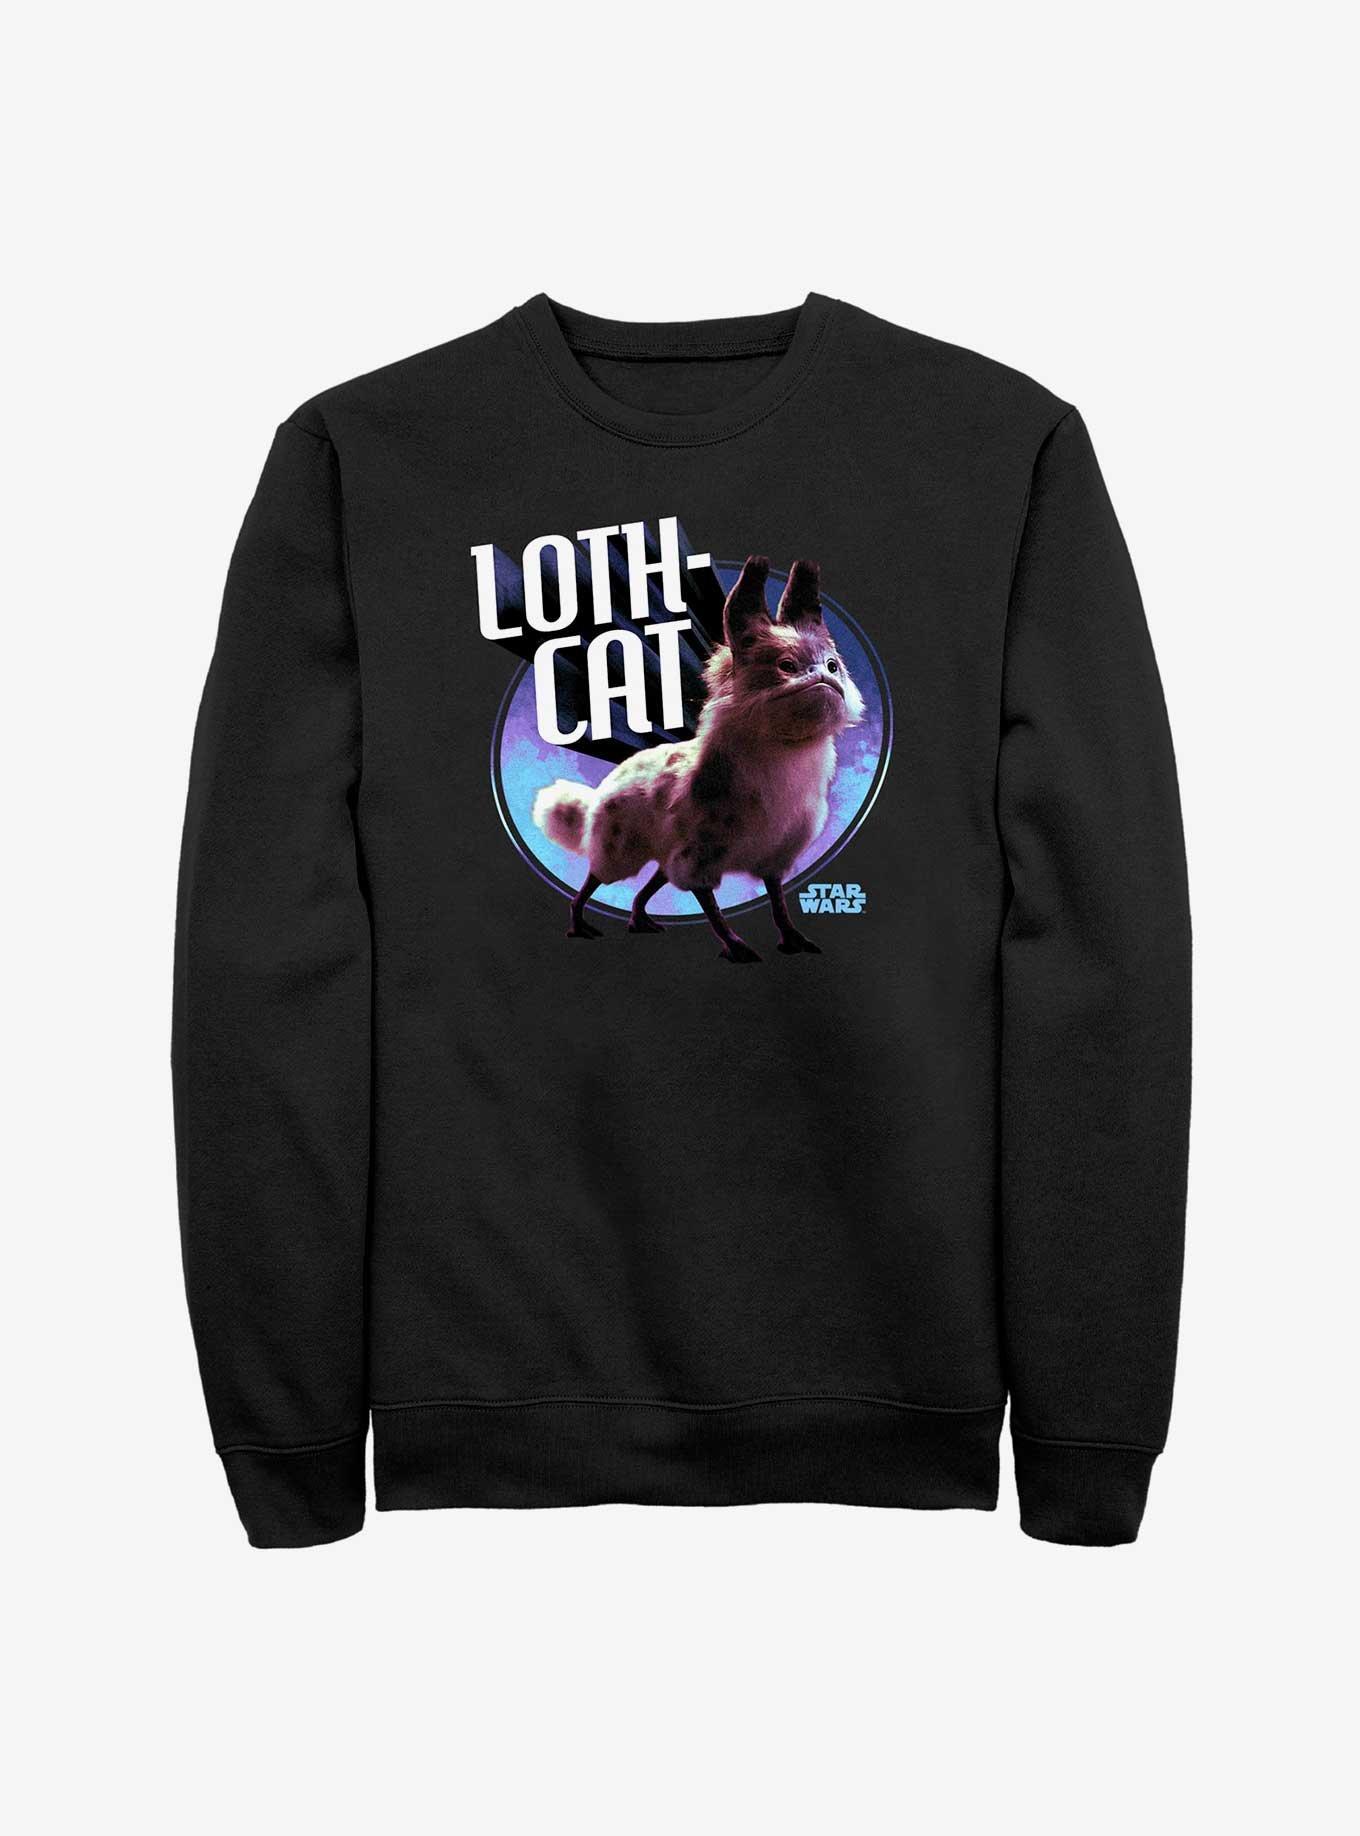 Star Wars Ahsoka Loth-Cat Sweatshirt Hot Topic Web Exclusive